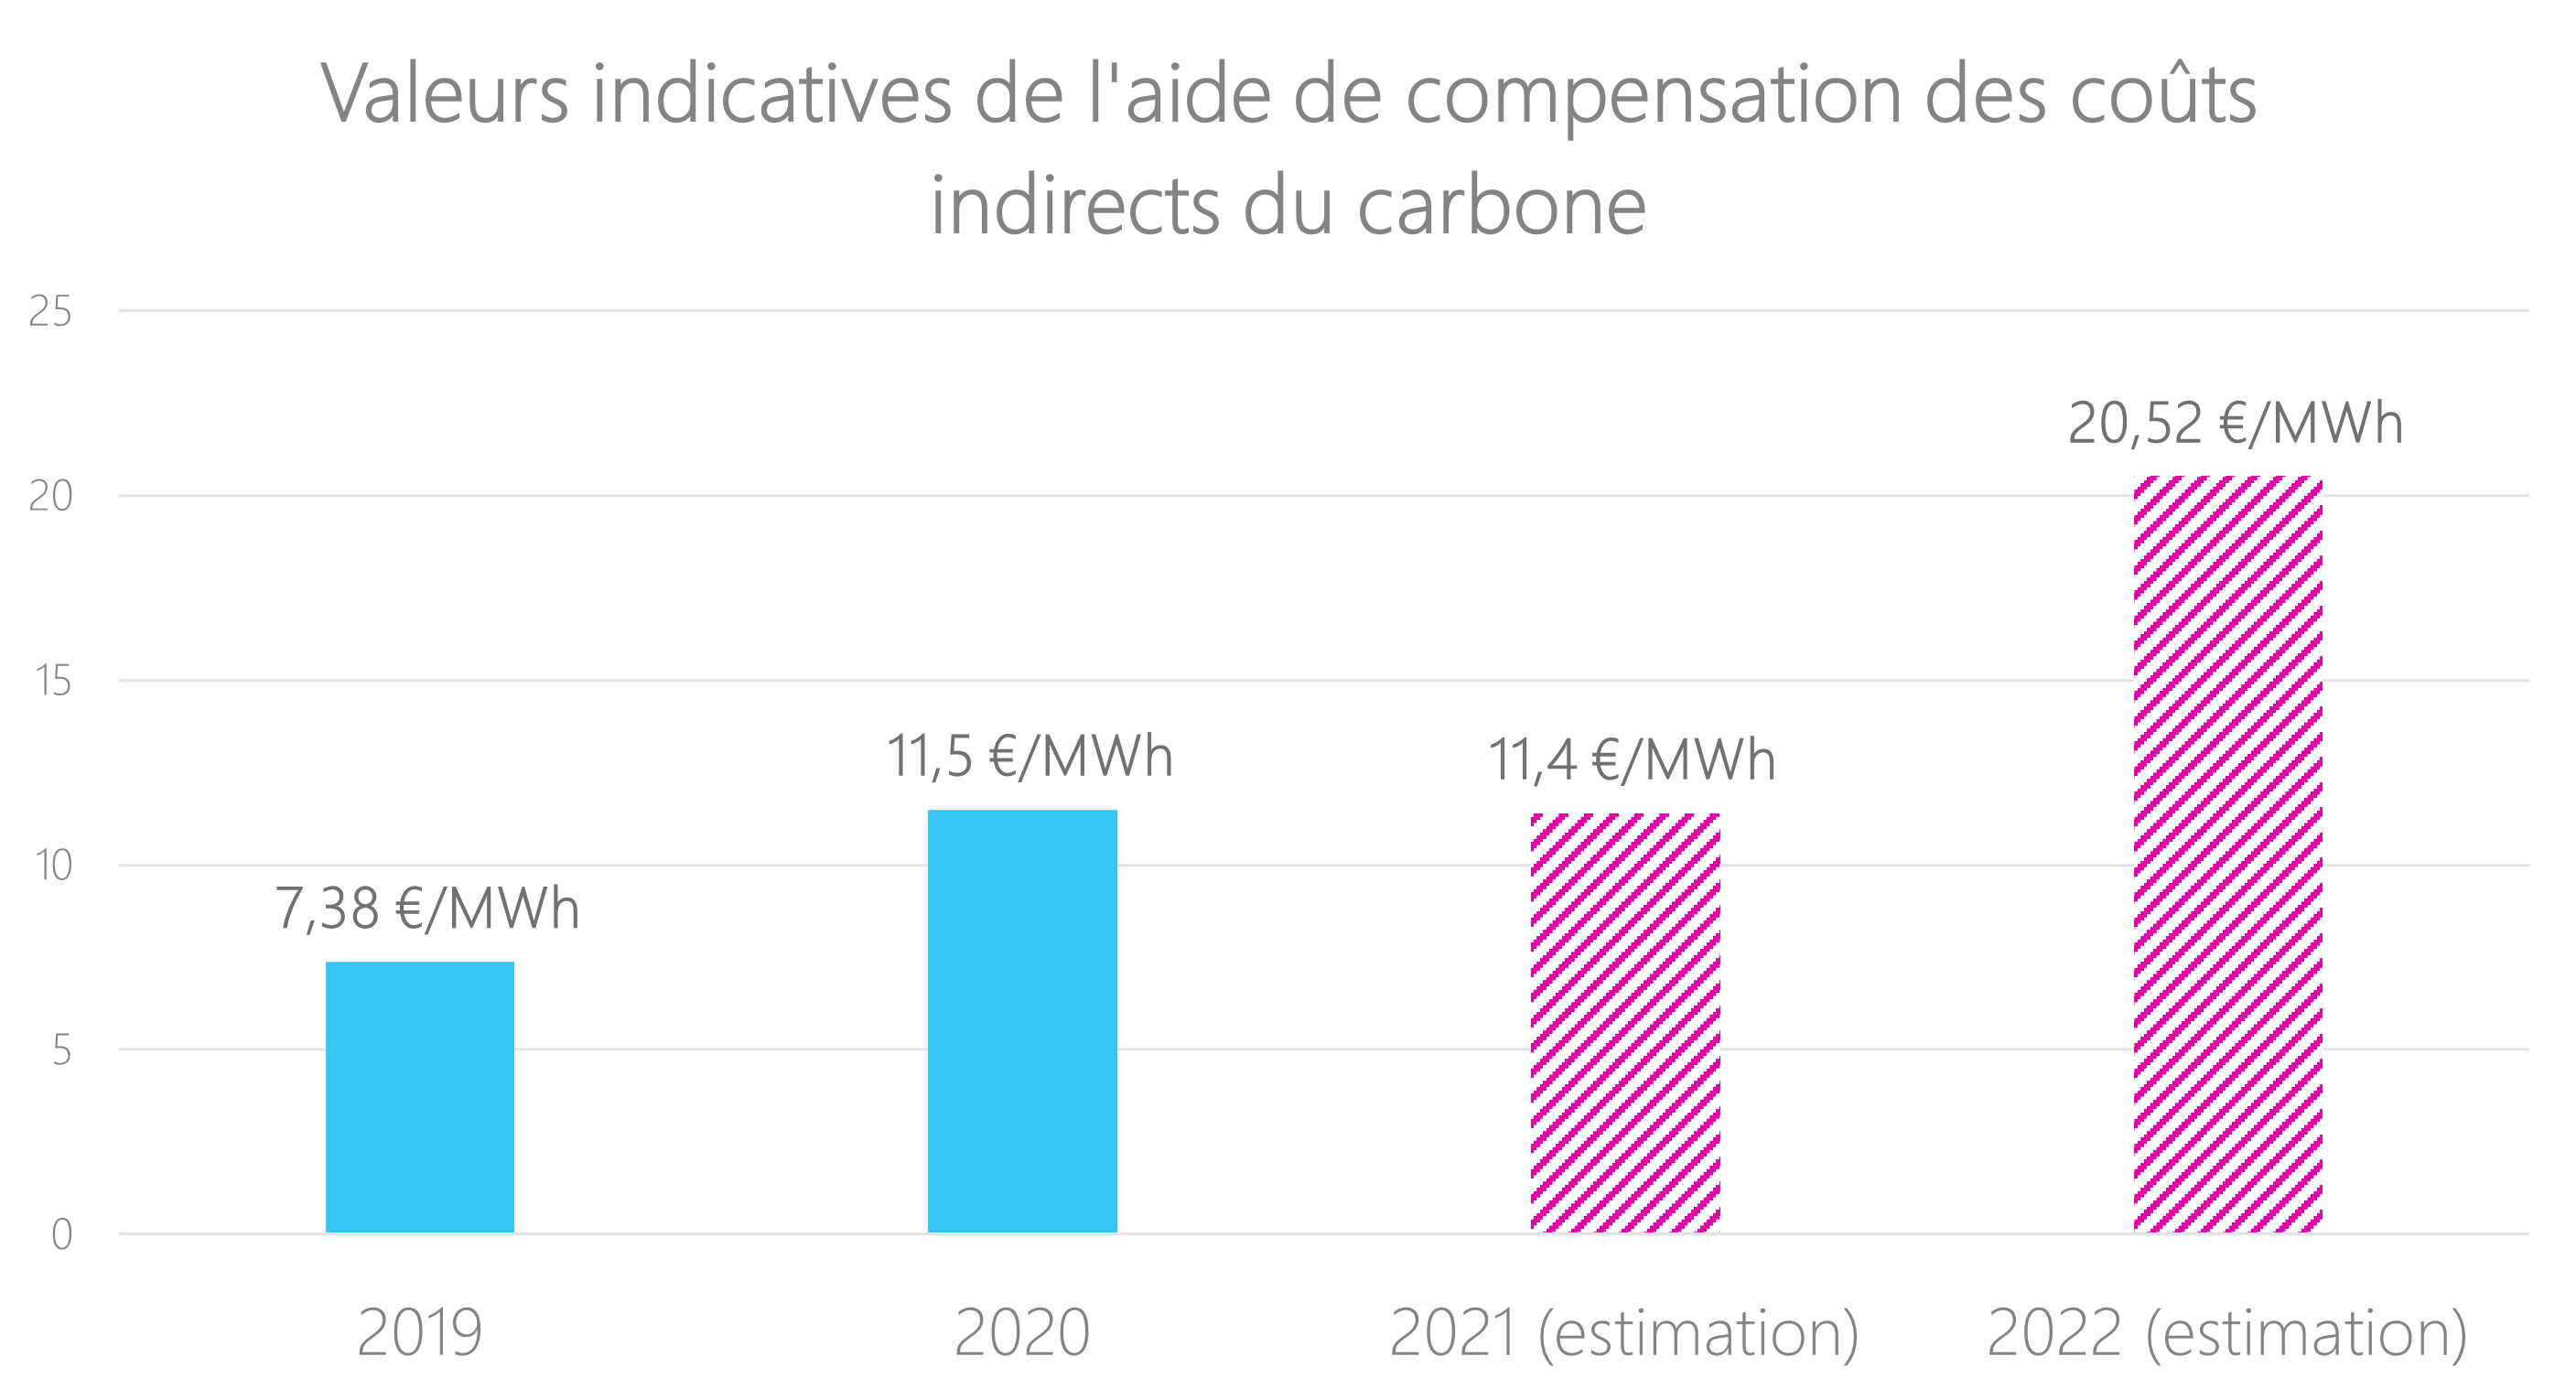 Tableau indiquant les valeurs indicatives de l'aide de compensation des coûts indirects du carbone